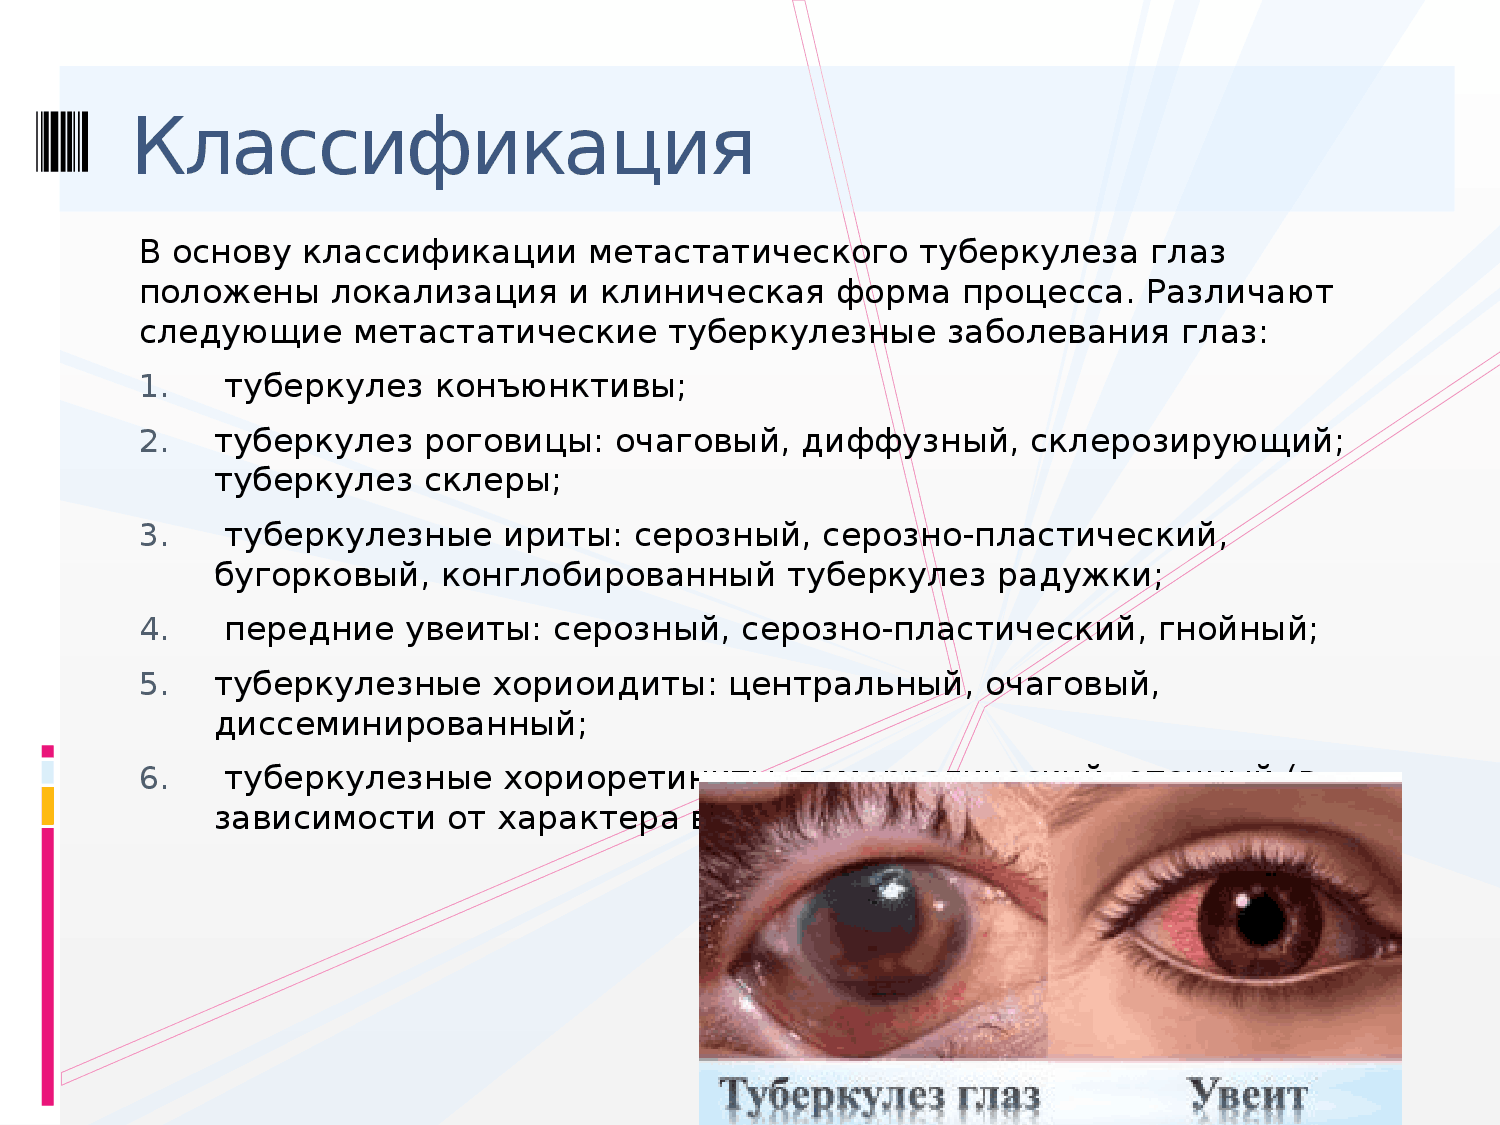 Признаки больных глаз. Кератит – воспаление роговицы глаза.. Туберкулезные заболевания глаз.